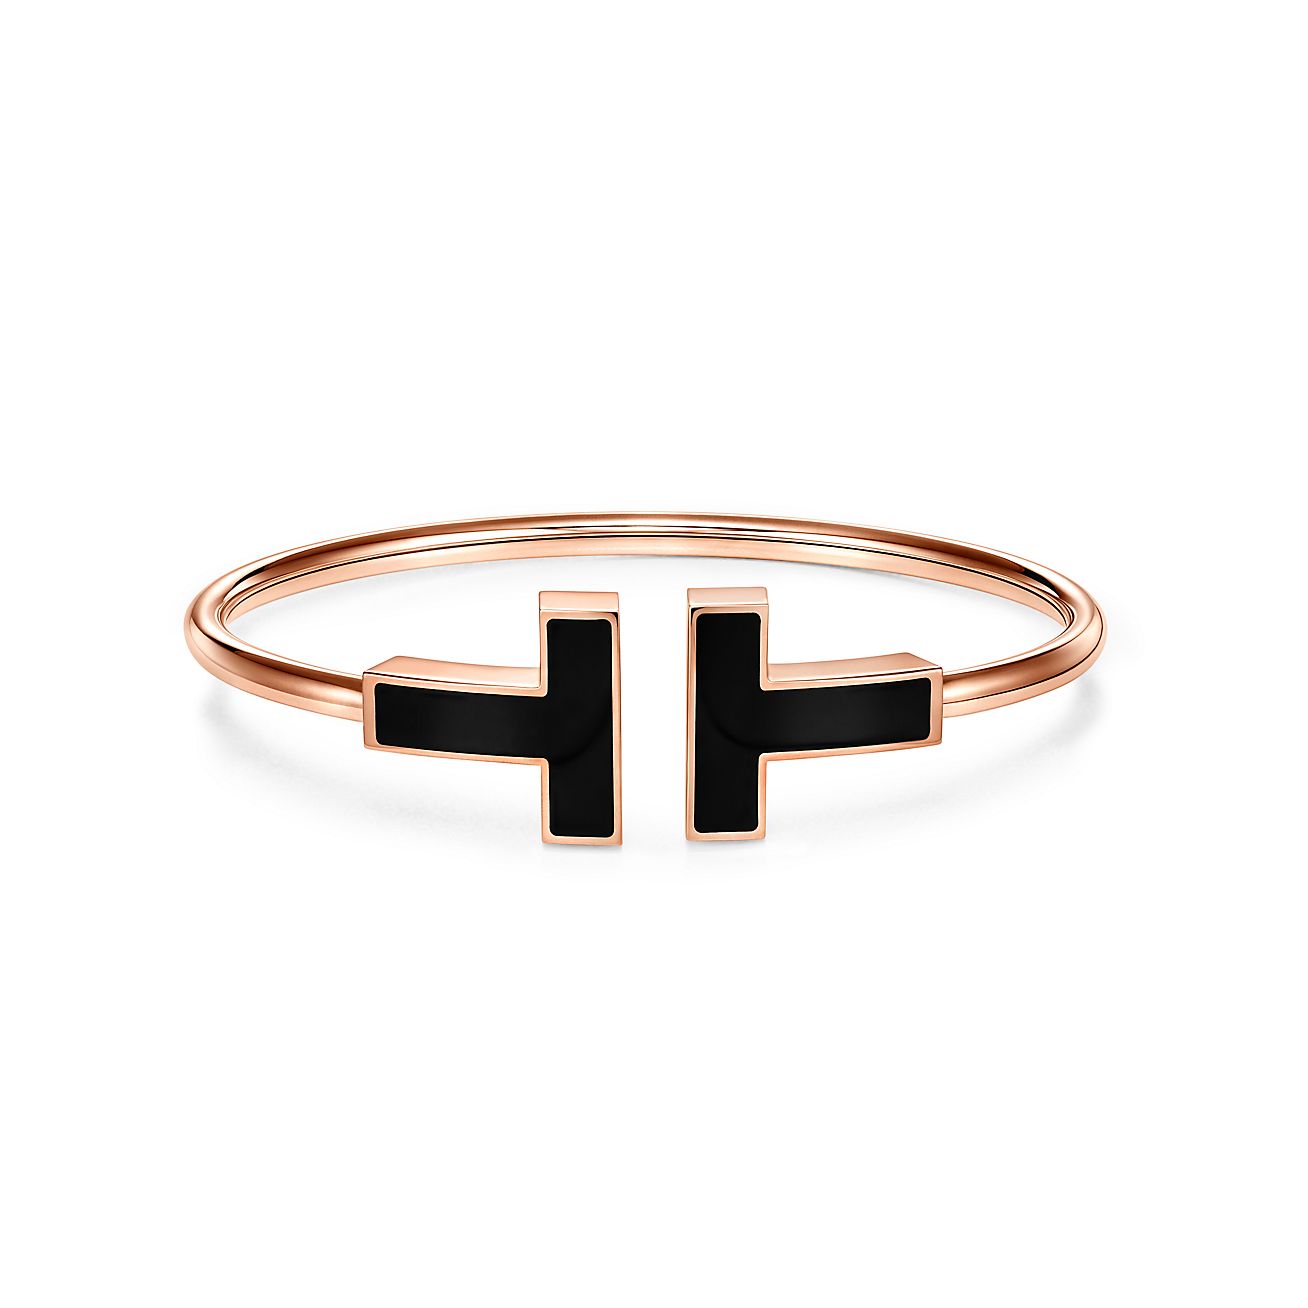 Tiffany T wide black onyx wire bracelet 